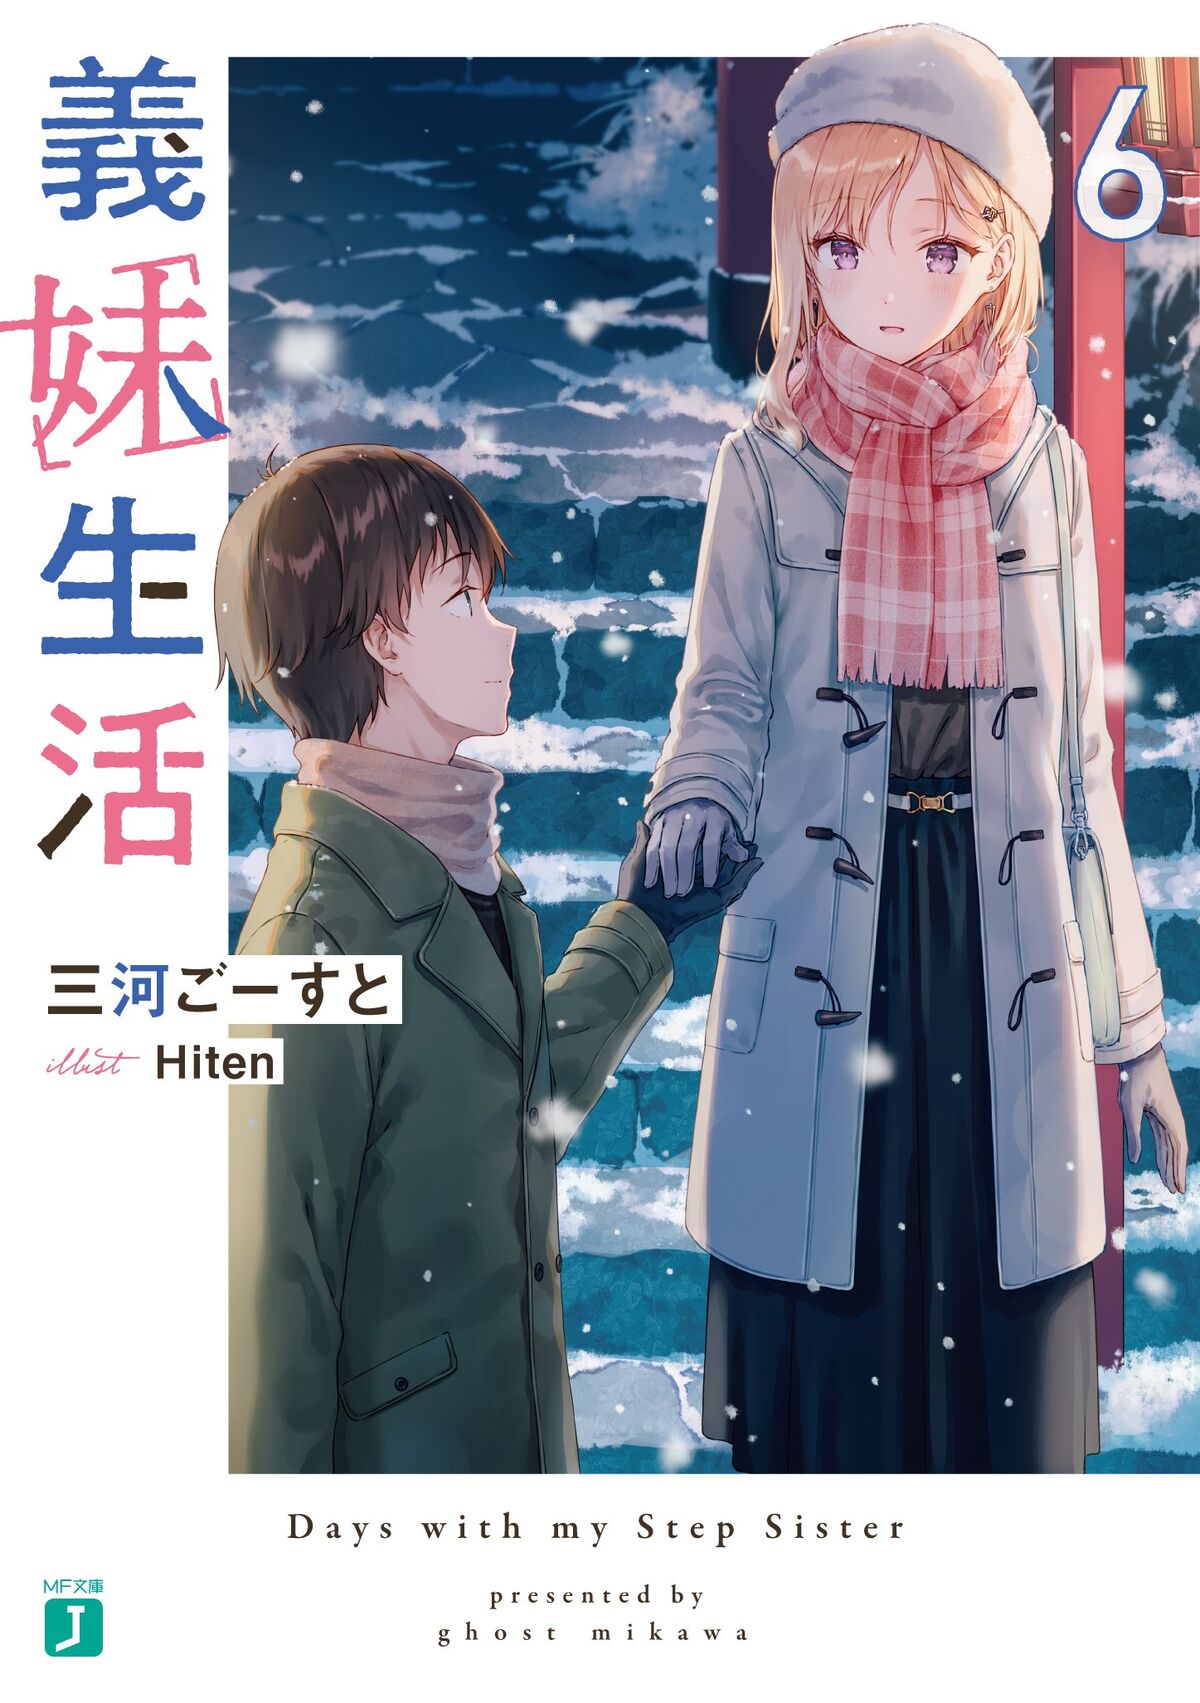 Light Novel Volume 5, Gimai Seikatsu Wiki